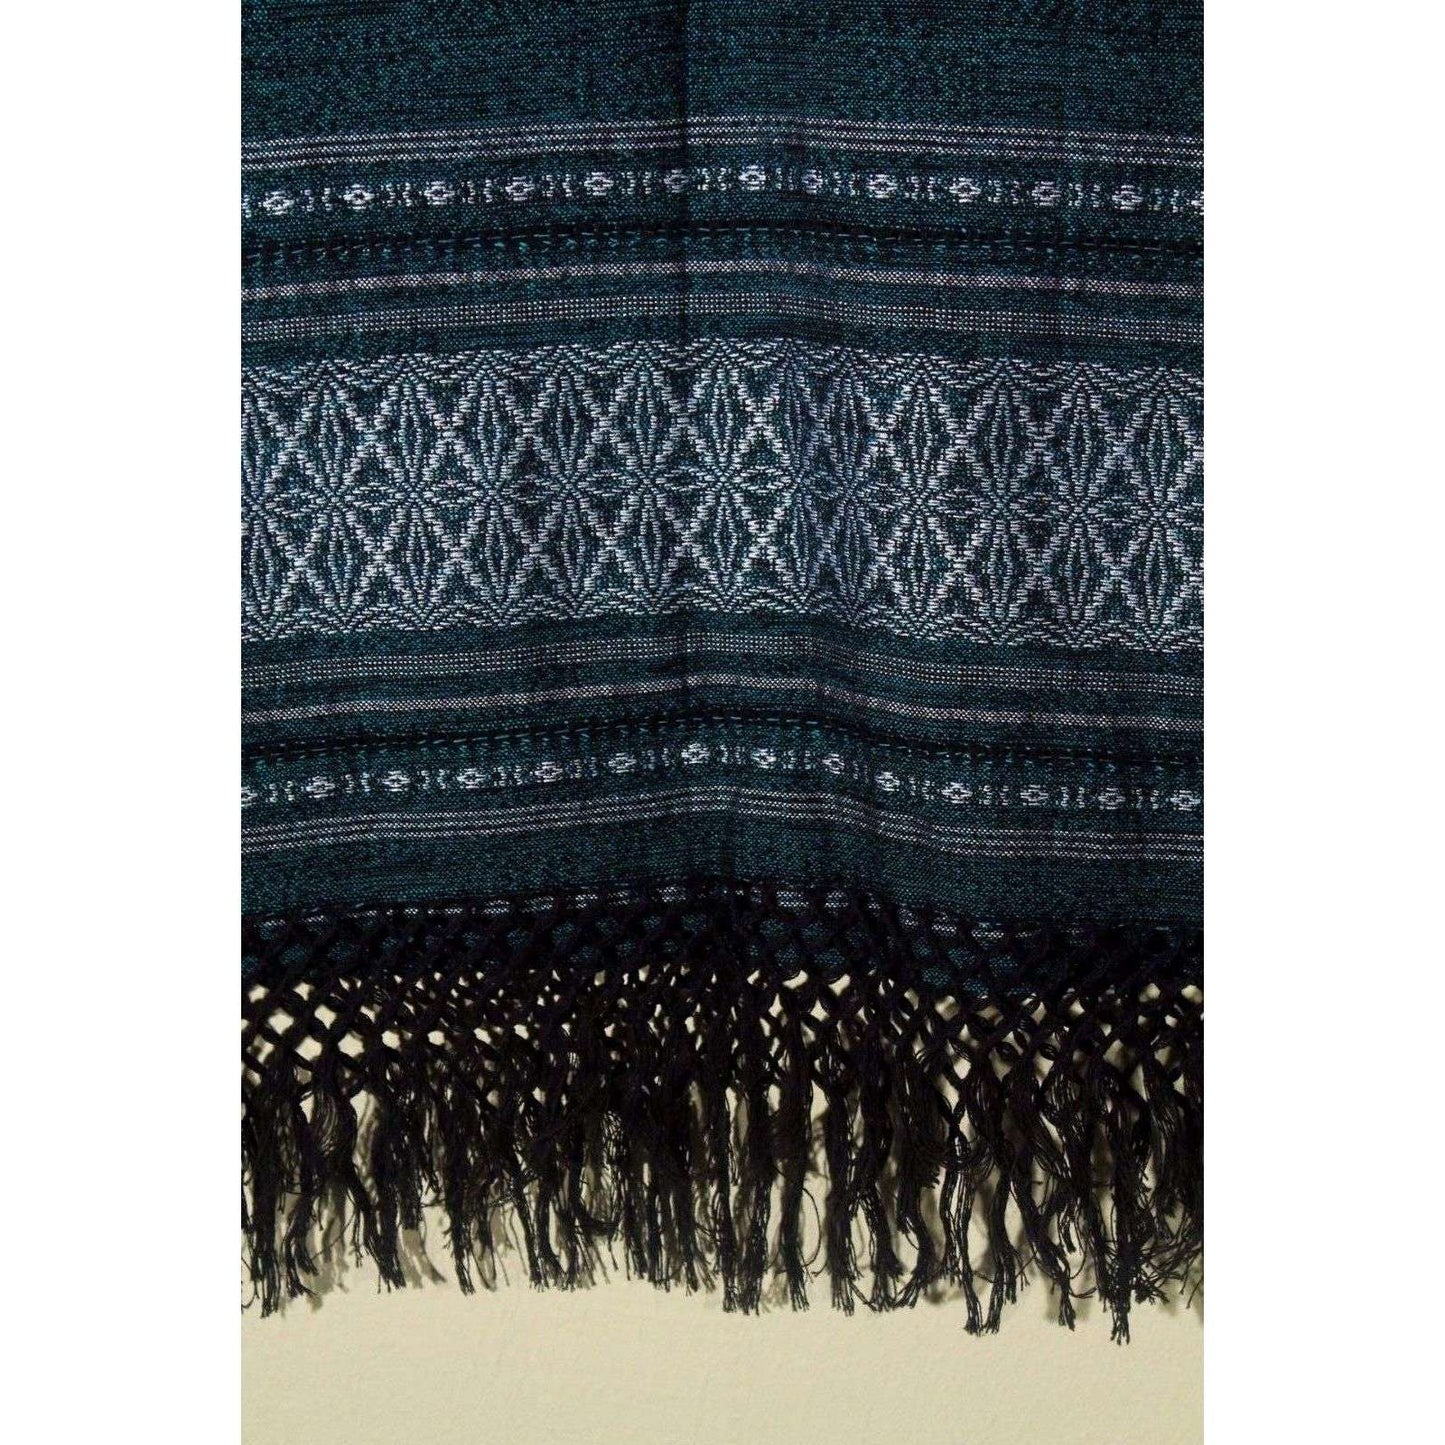 Mexican Loom Woven Cotton Blue/Green Blouse/Top Oaxaca Folk Art Women